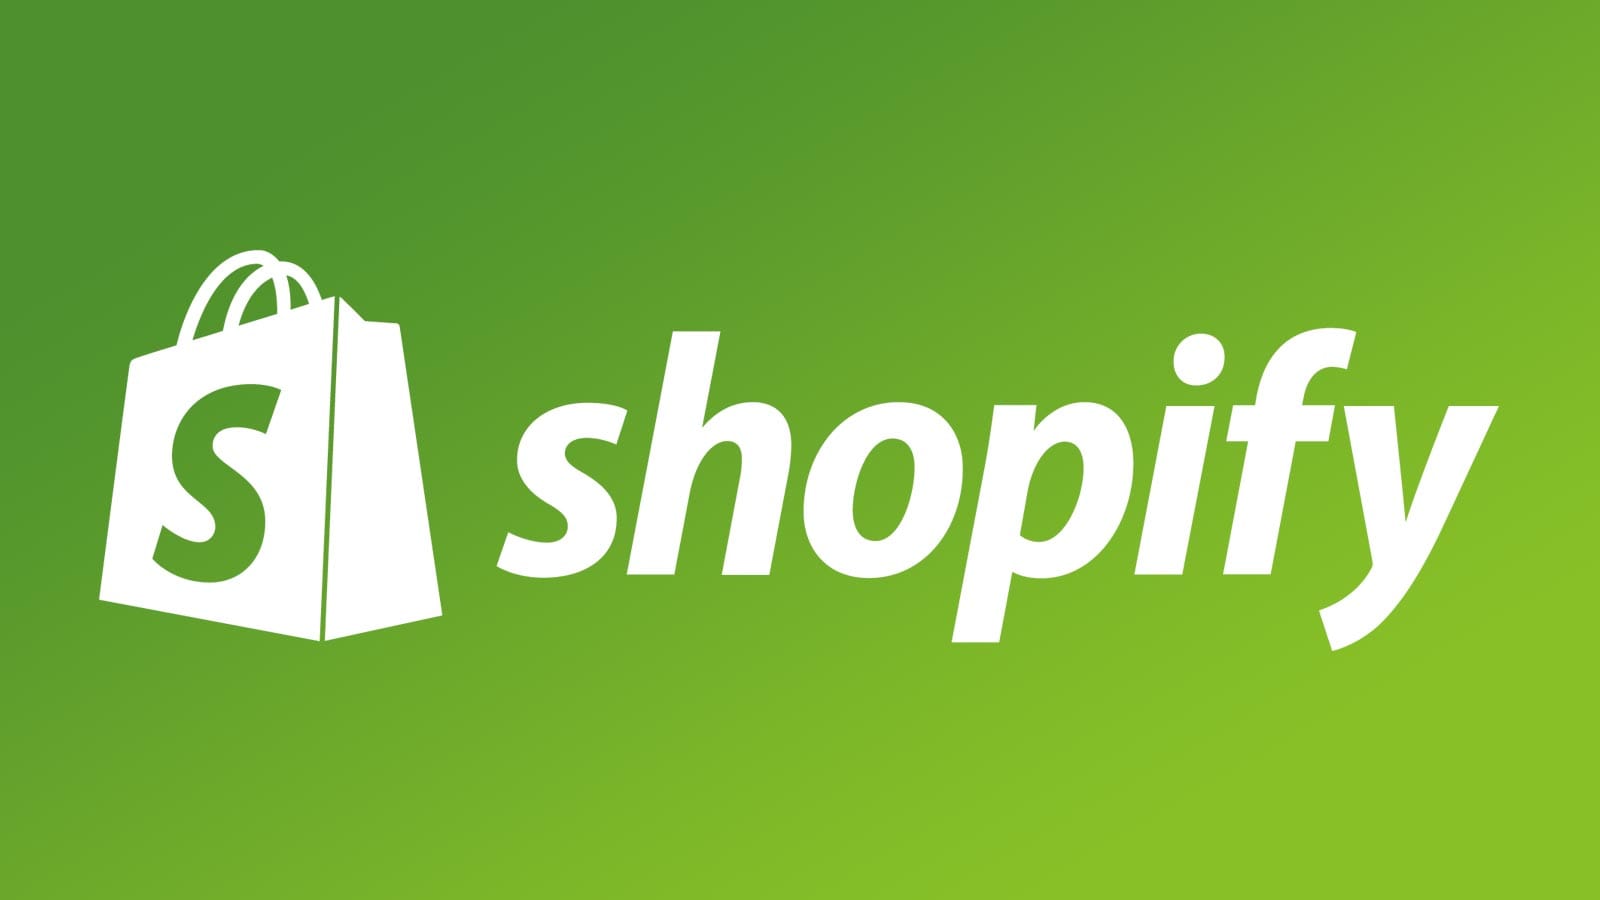 Shopify Secrets Free Download